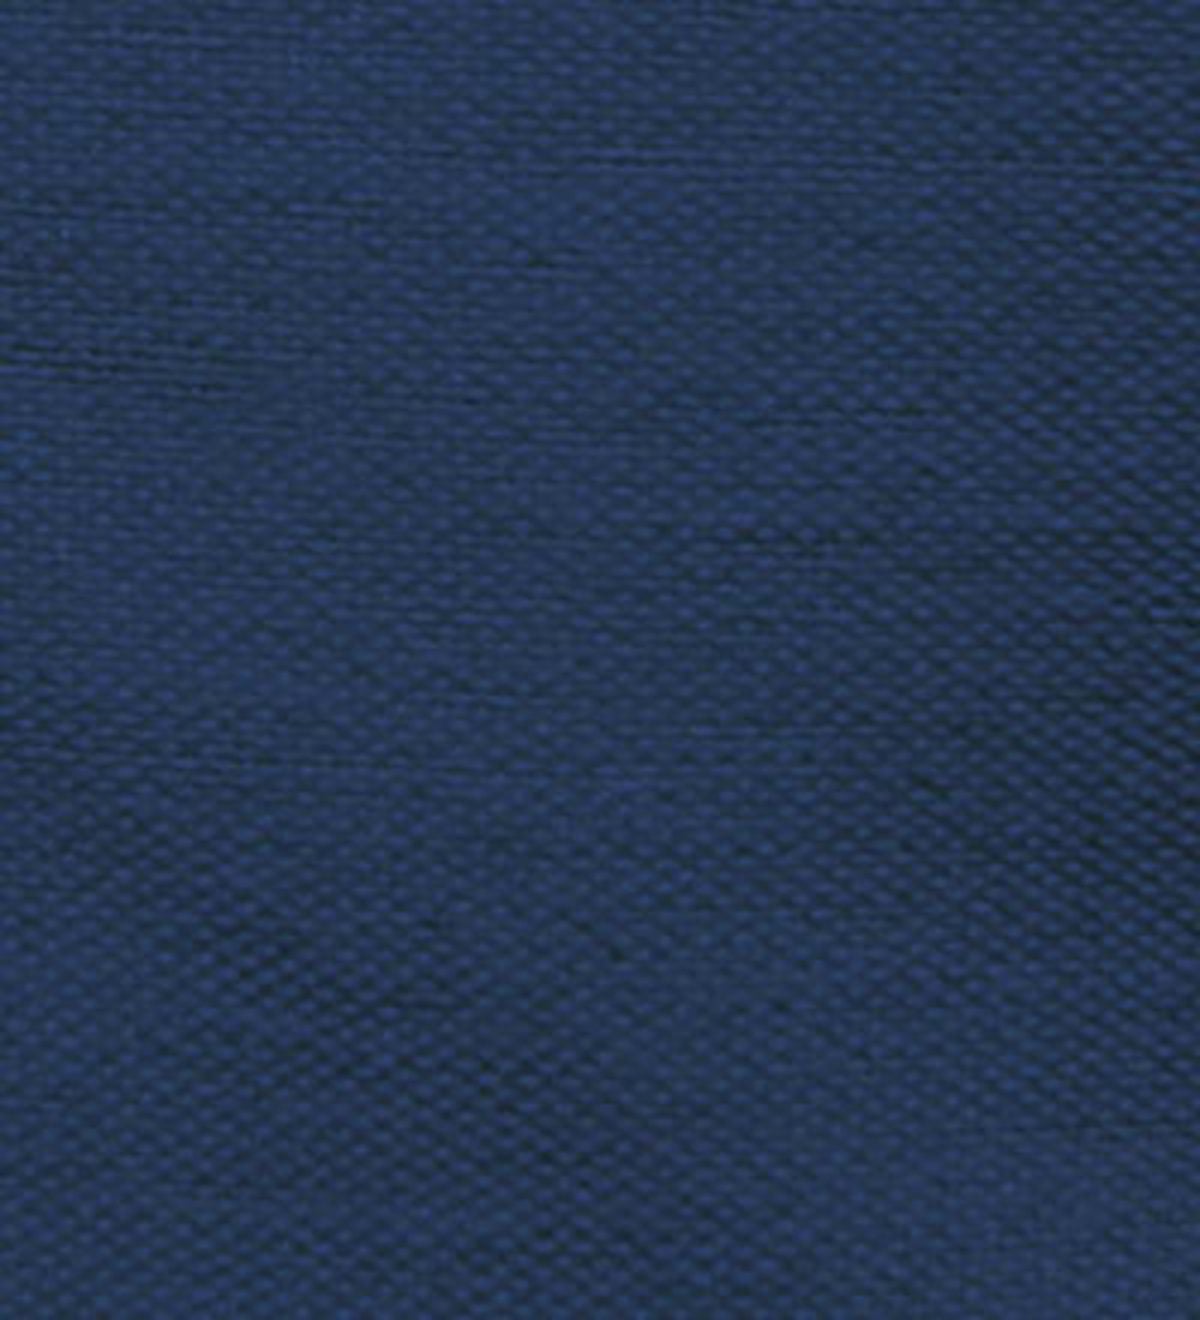 Card Tablevogue, 34”sq. x 29”H - Navy